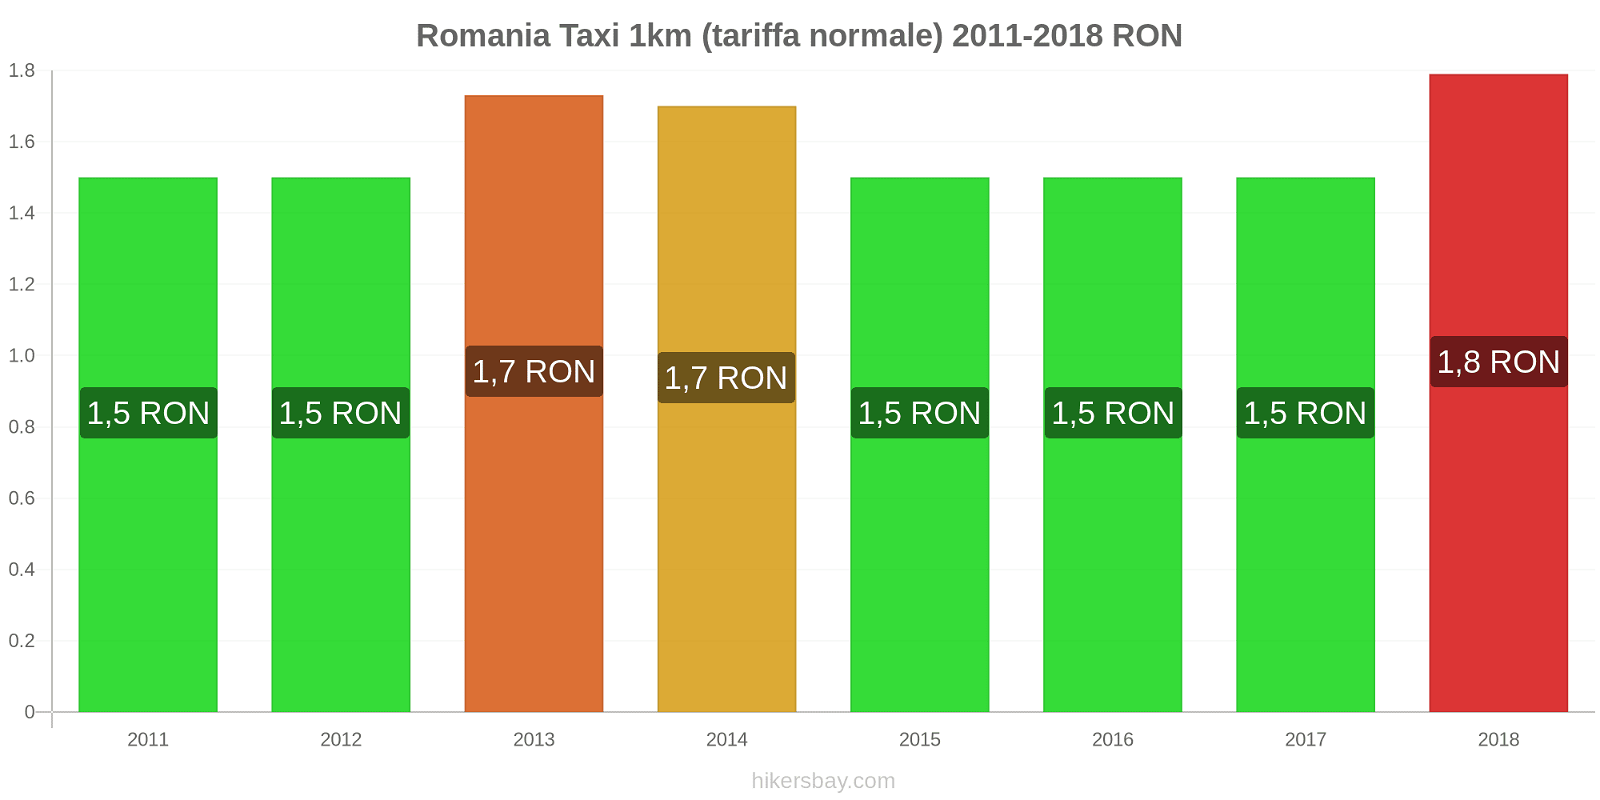 Romania cambi di prezzo Taxi 1km (tariffa normale) hikersbay.com